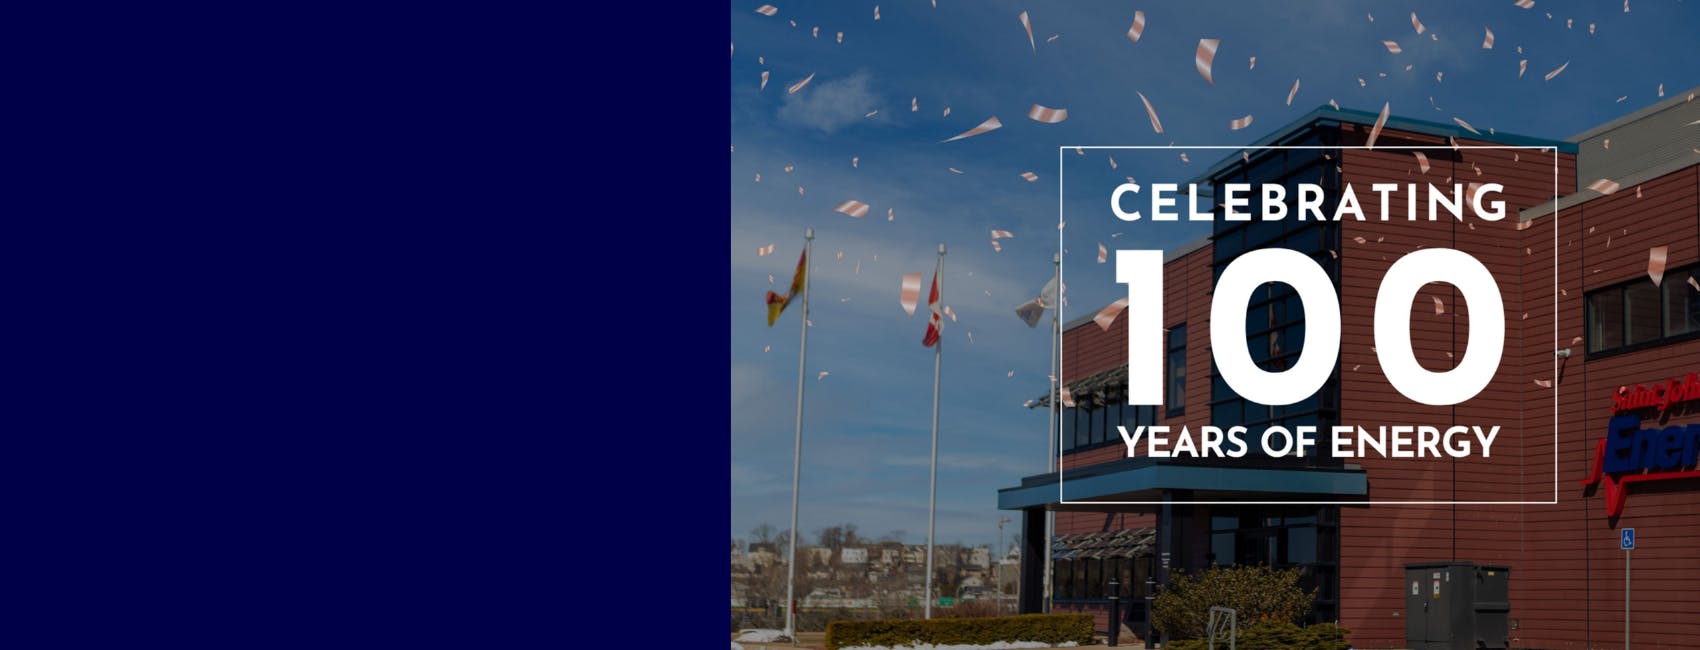 Celebrating 100 Years of Energy